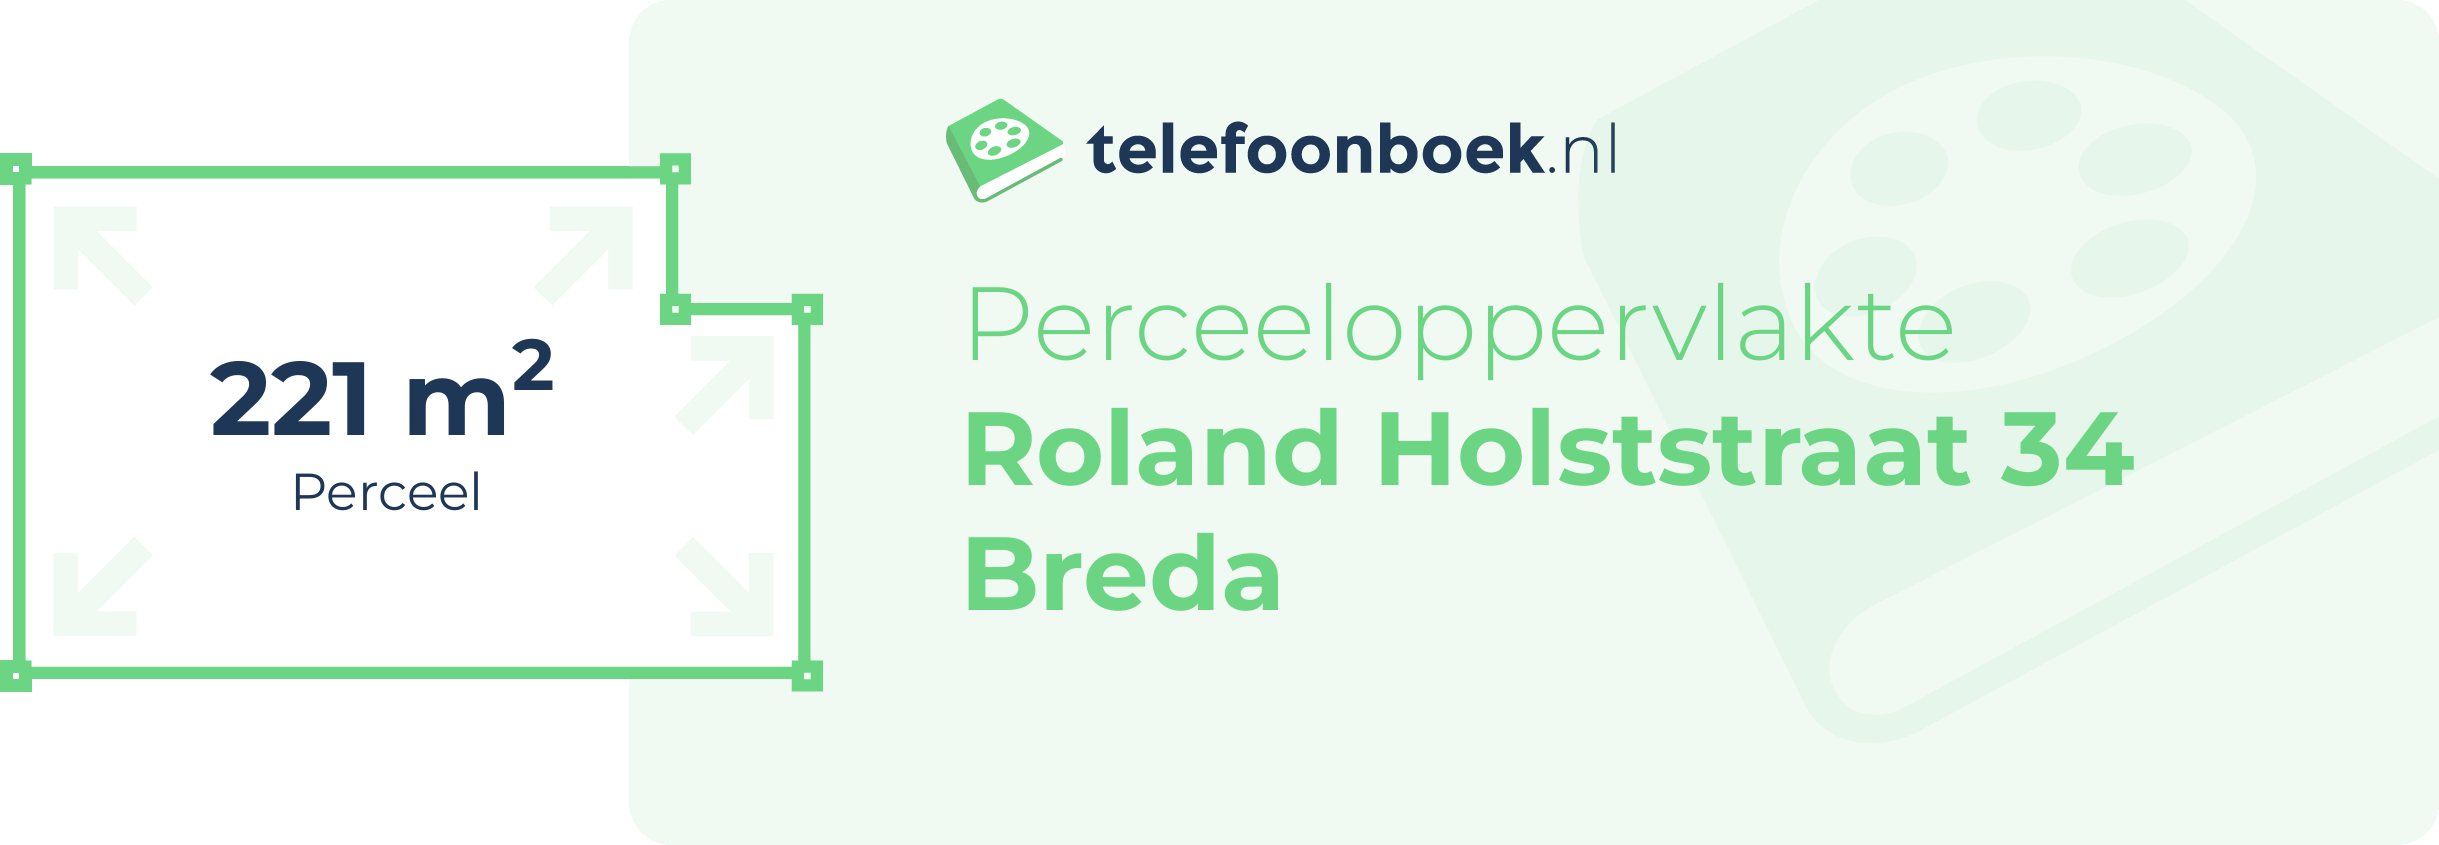 Perceeloppervlakte Roland Holststraat 34 Breda